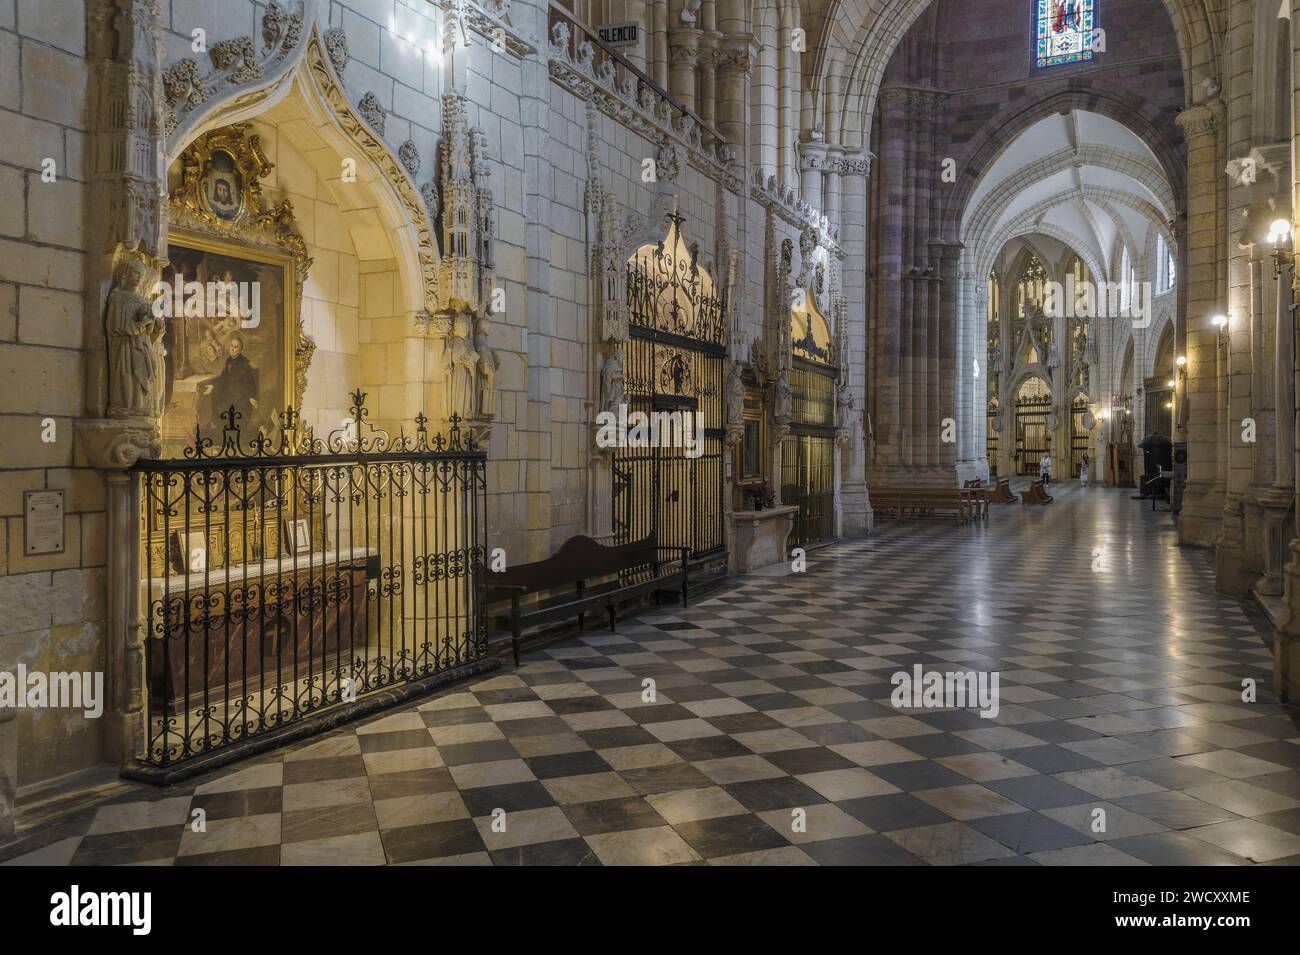 Chapelle et retables dans les nefs et ambulatoire de style gothique méditerranéen à l'intérieur de la cathédrale Sainte-Église de Santa María dans la ville de Murcie Banque D'Images